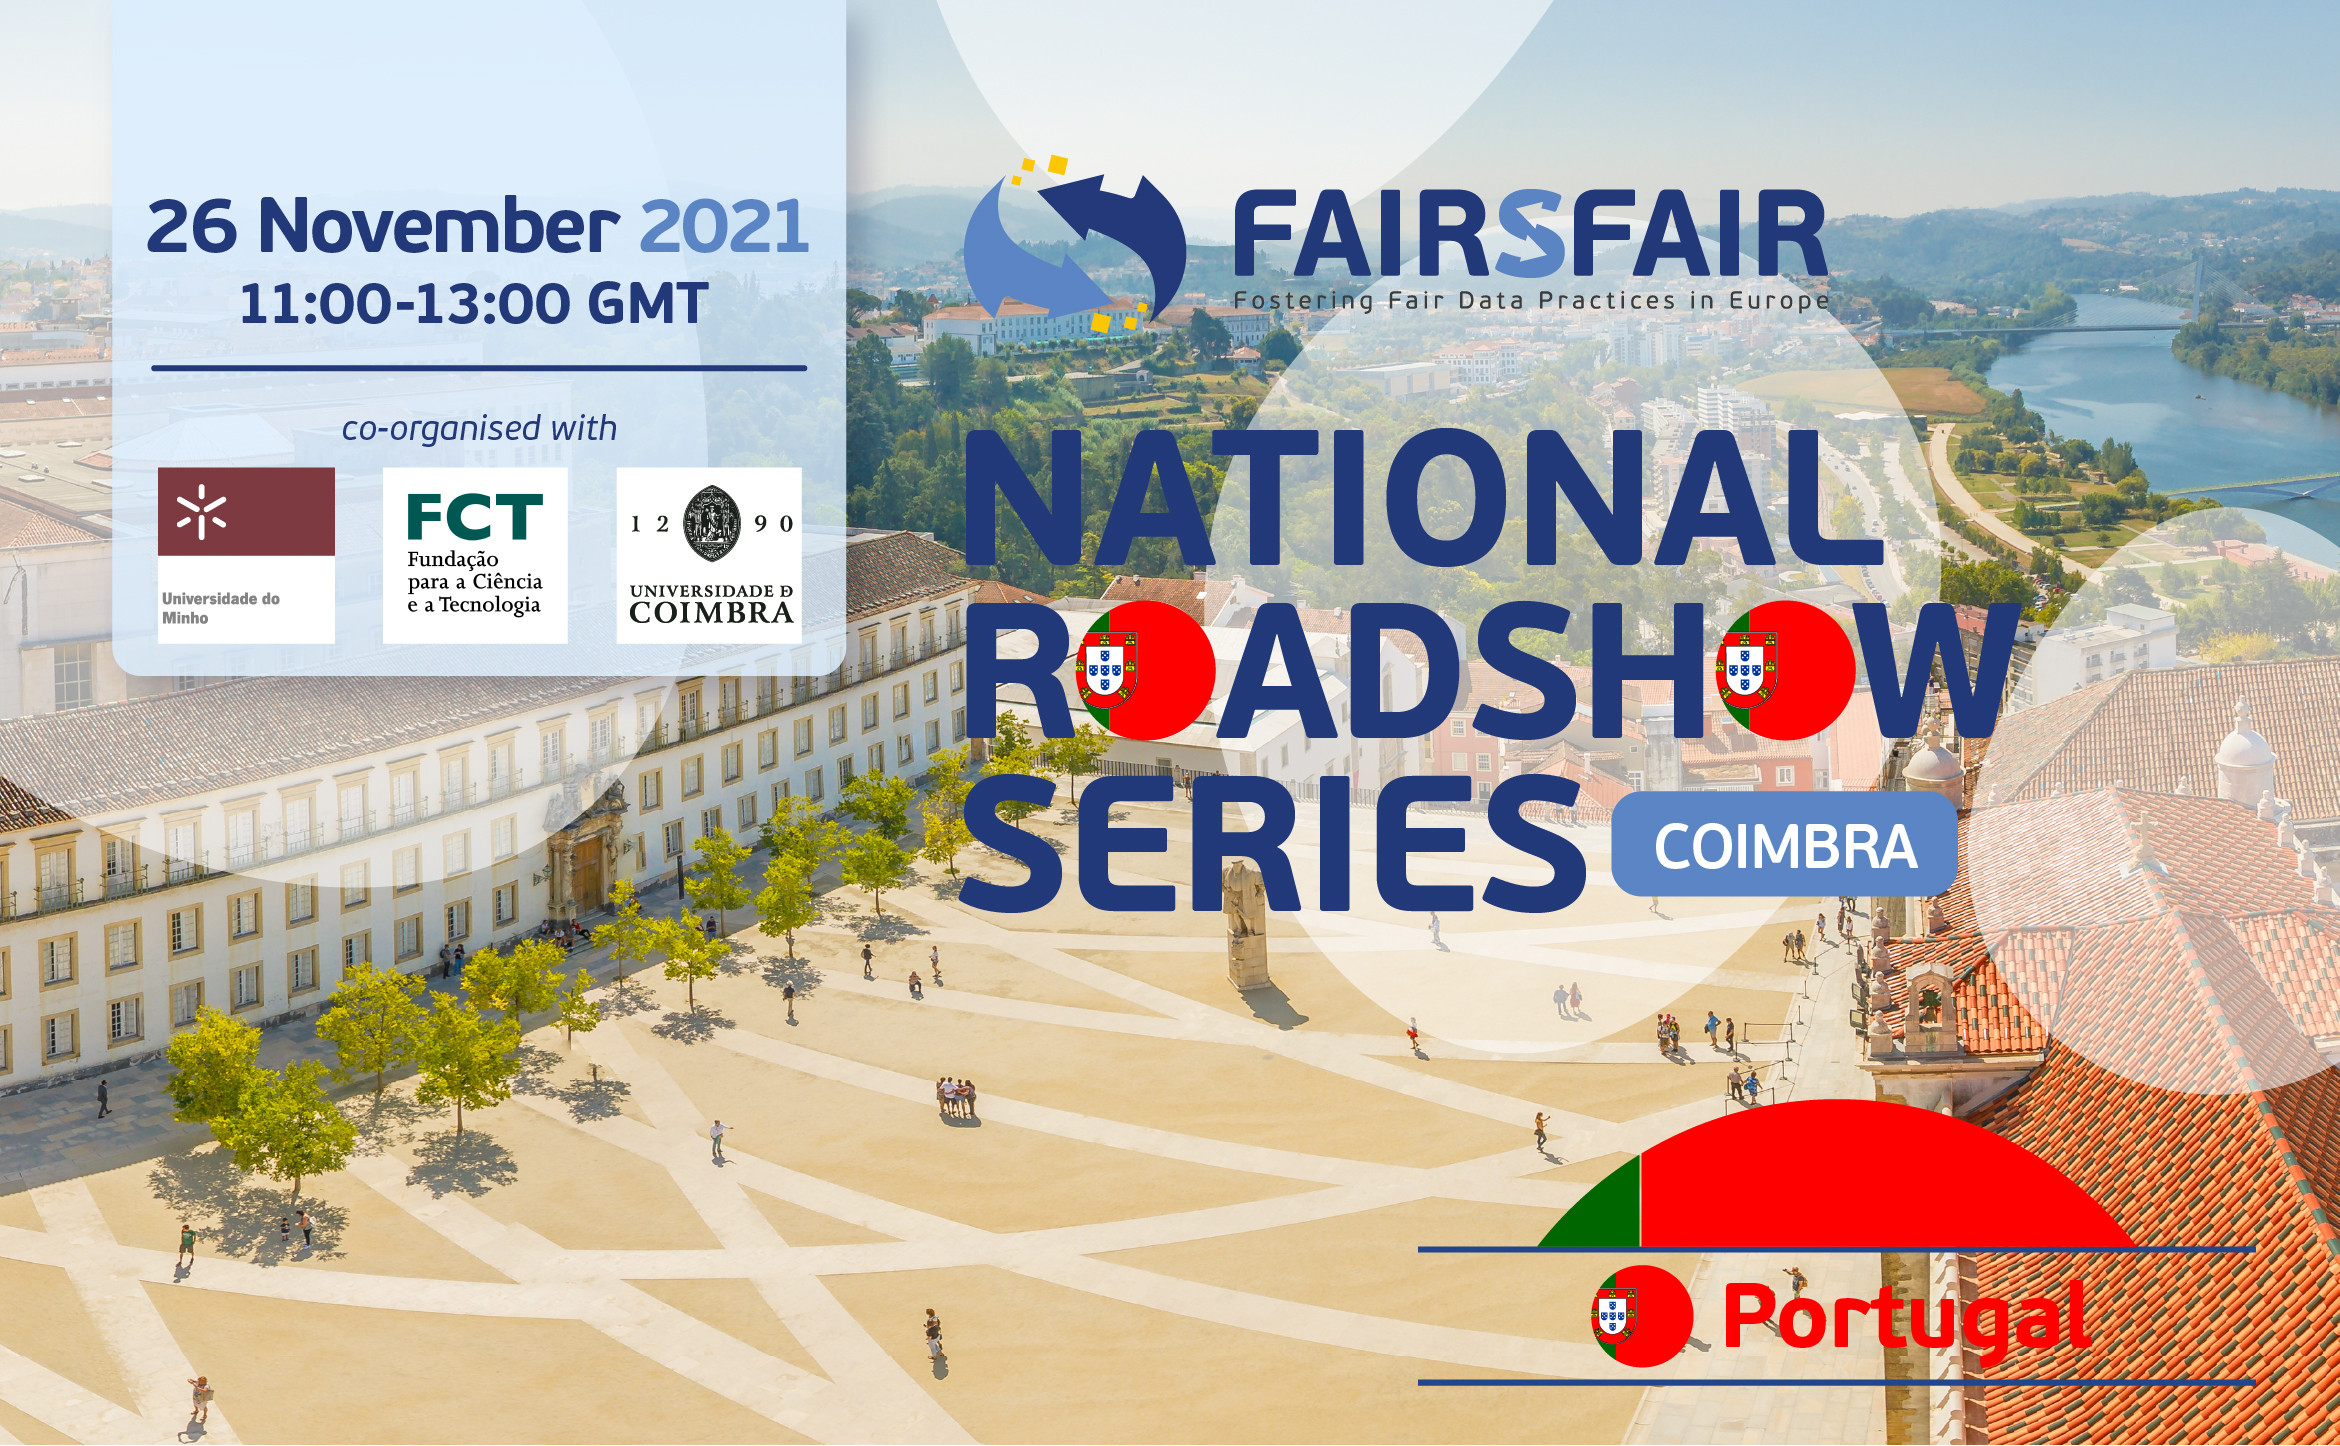 FAIRsFAIR National Roadshow in Portugal